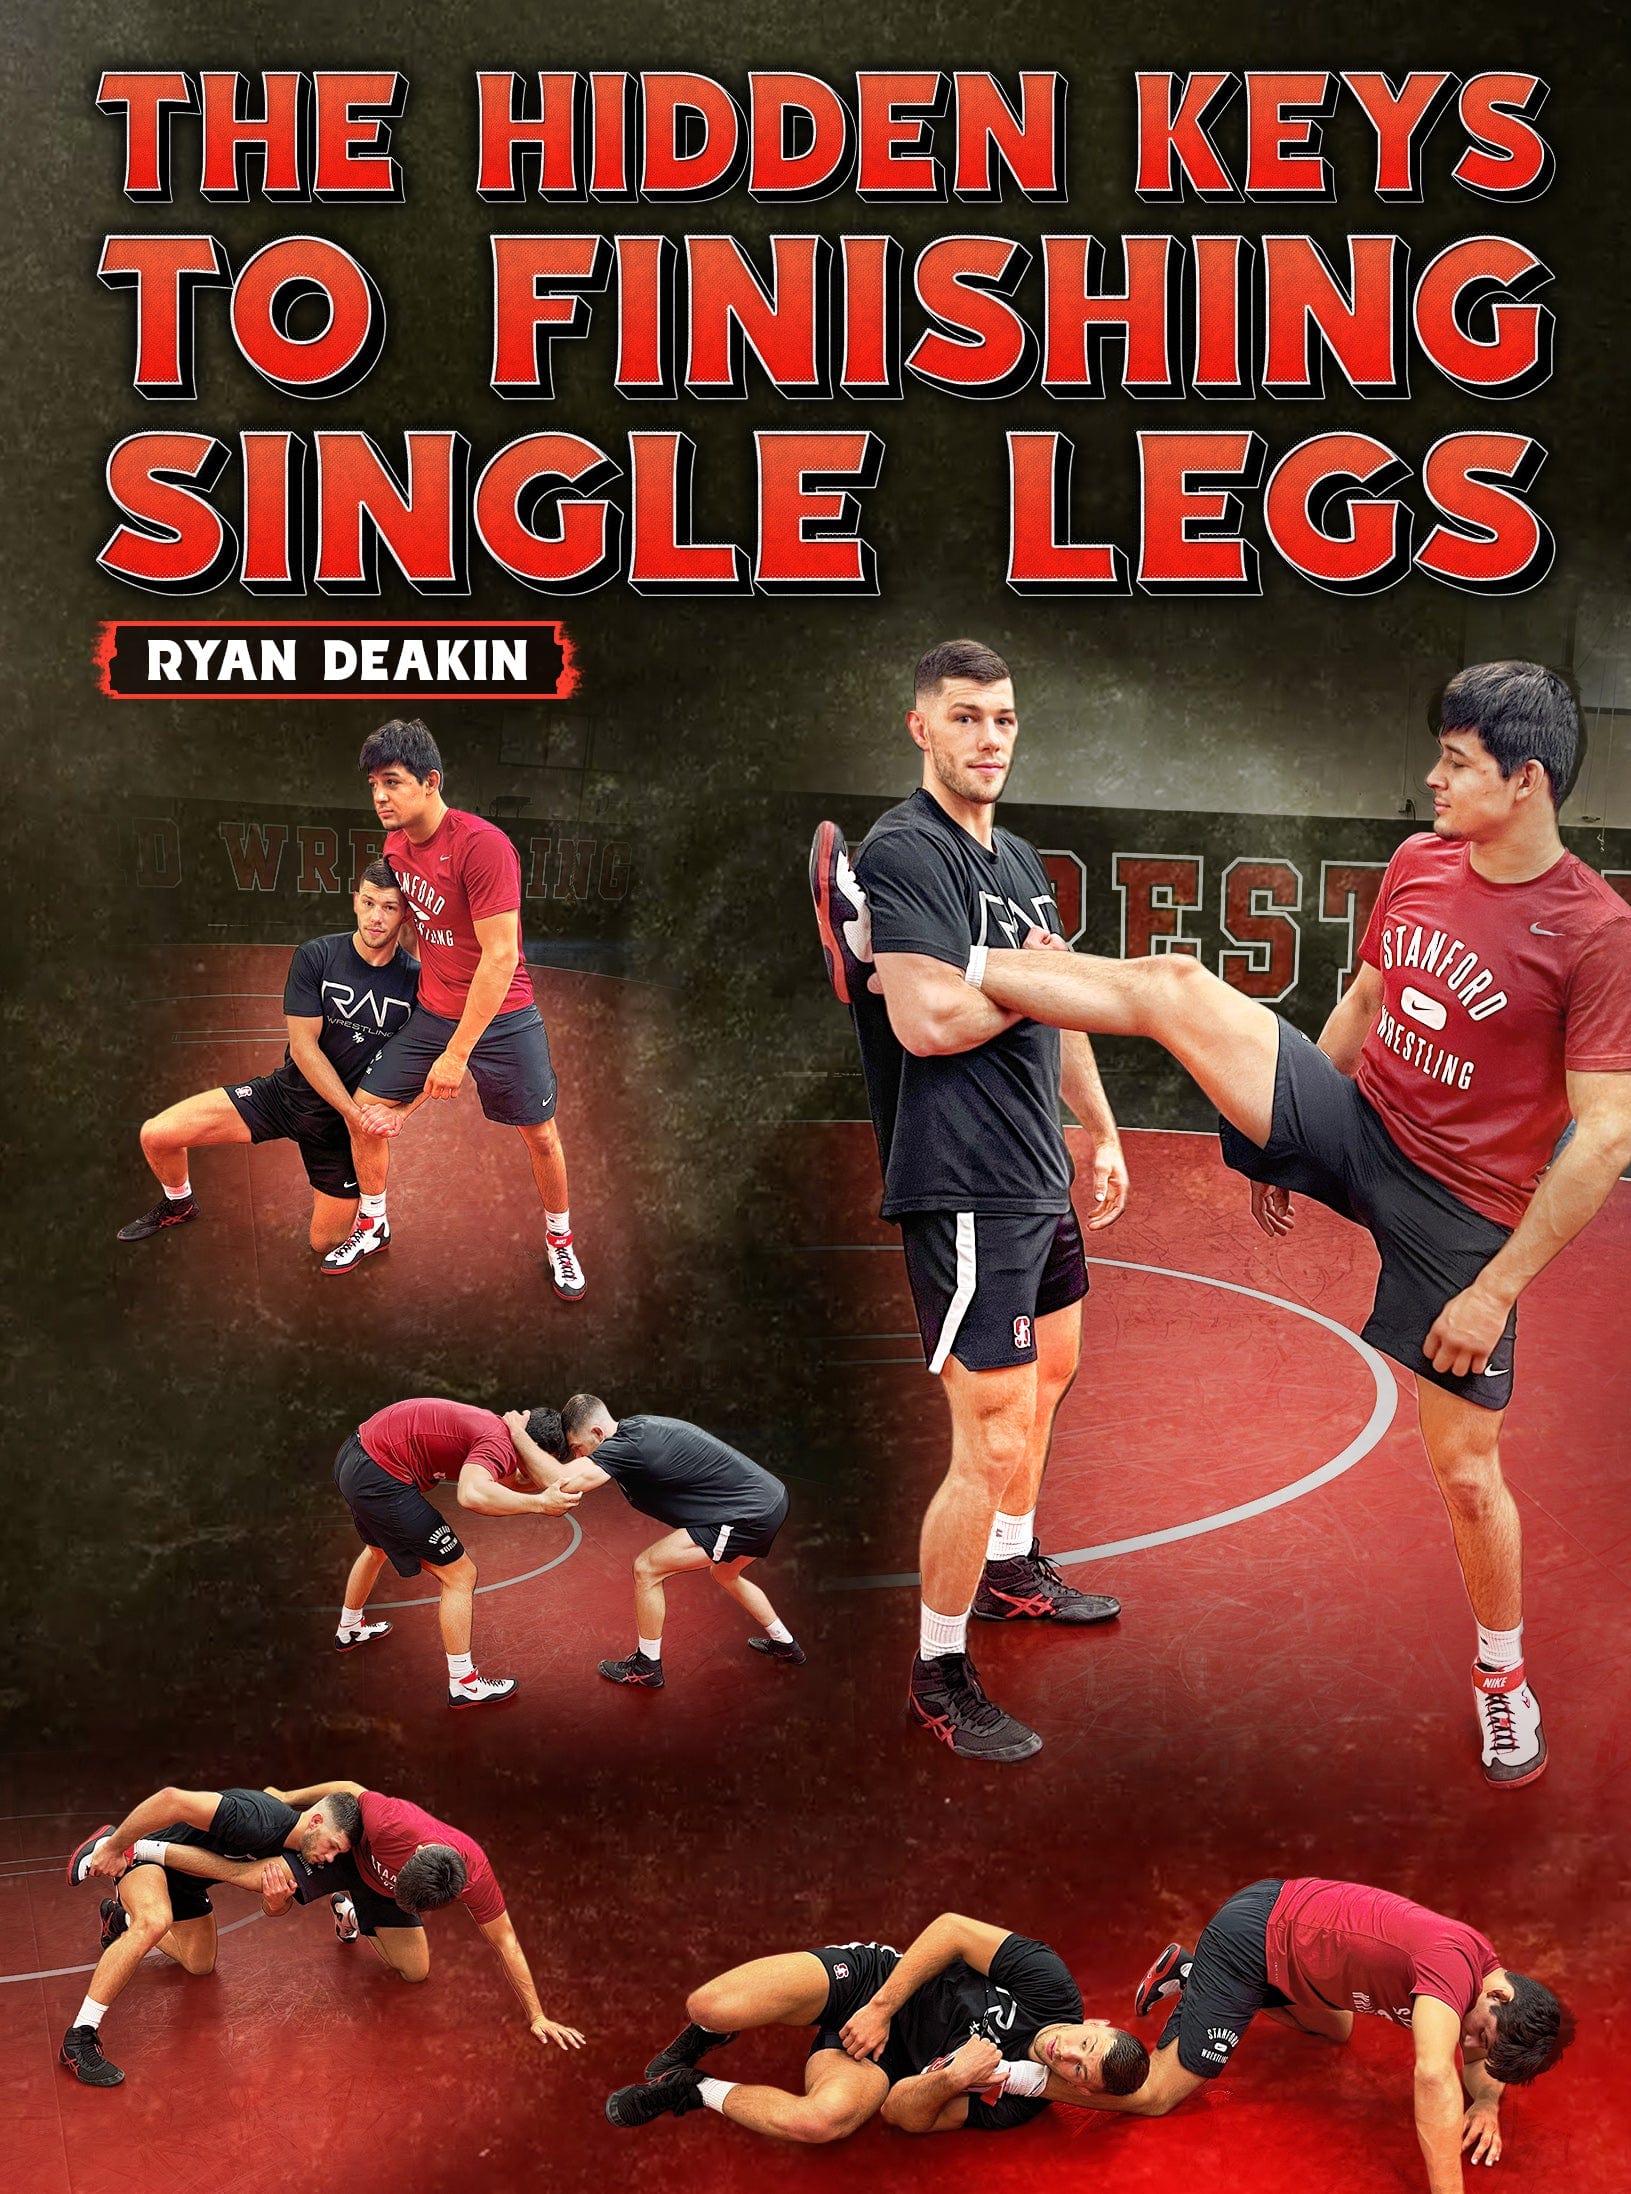 The Hidden Keys To Finishing Single Legs by Ryan Deakin - Fanatic Wrestling